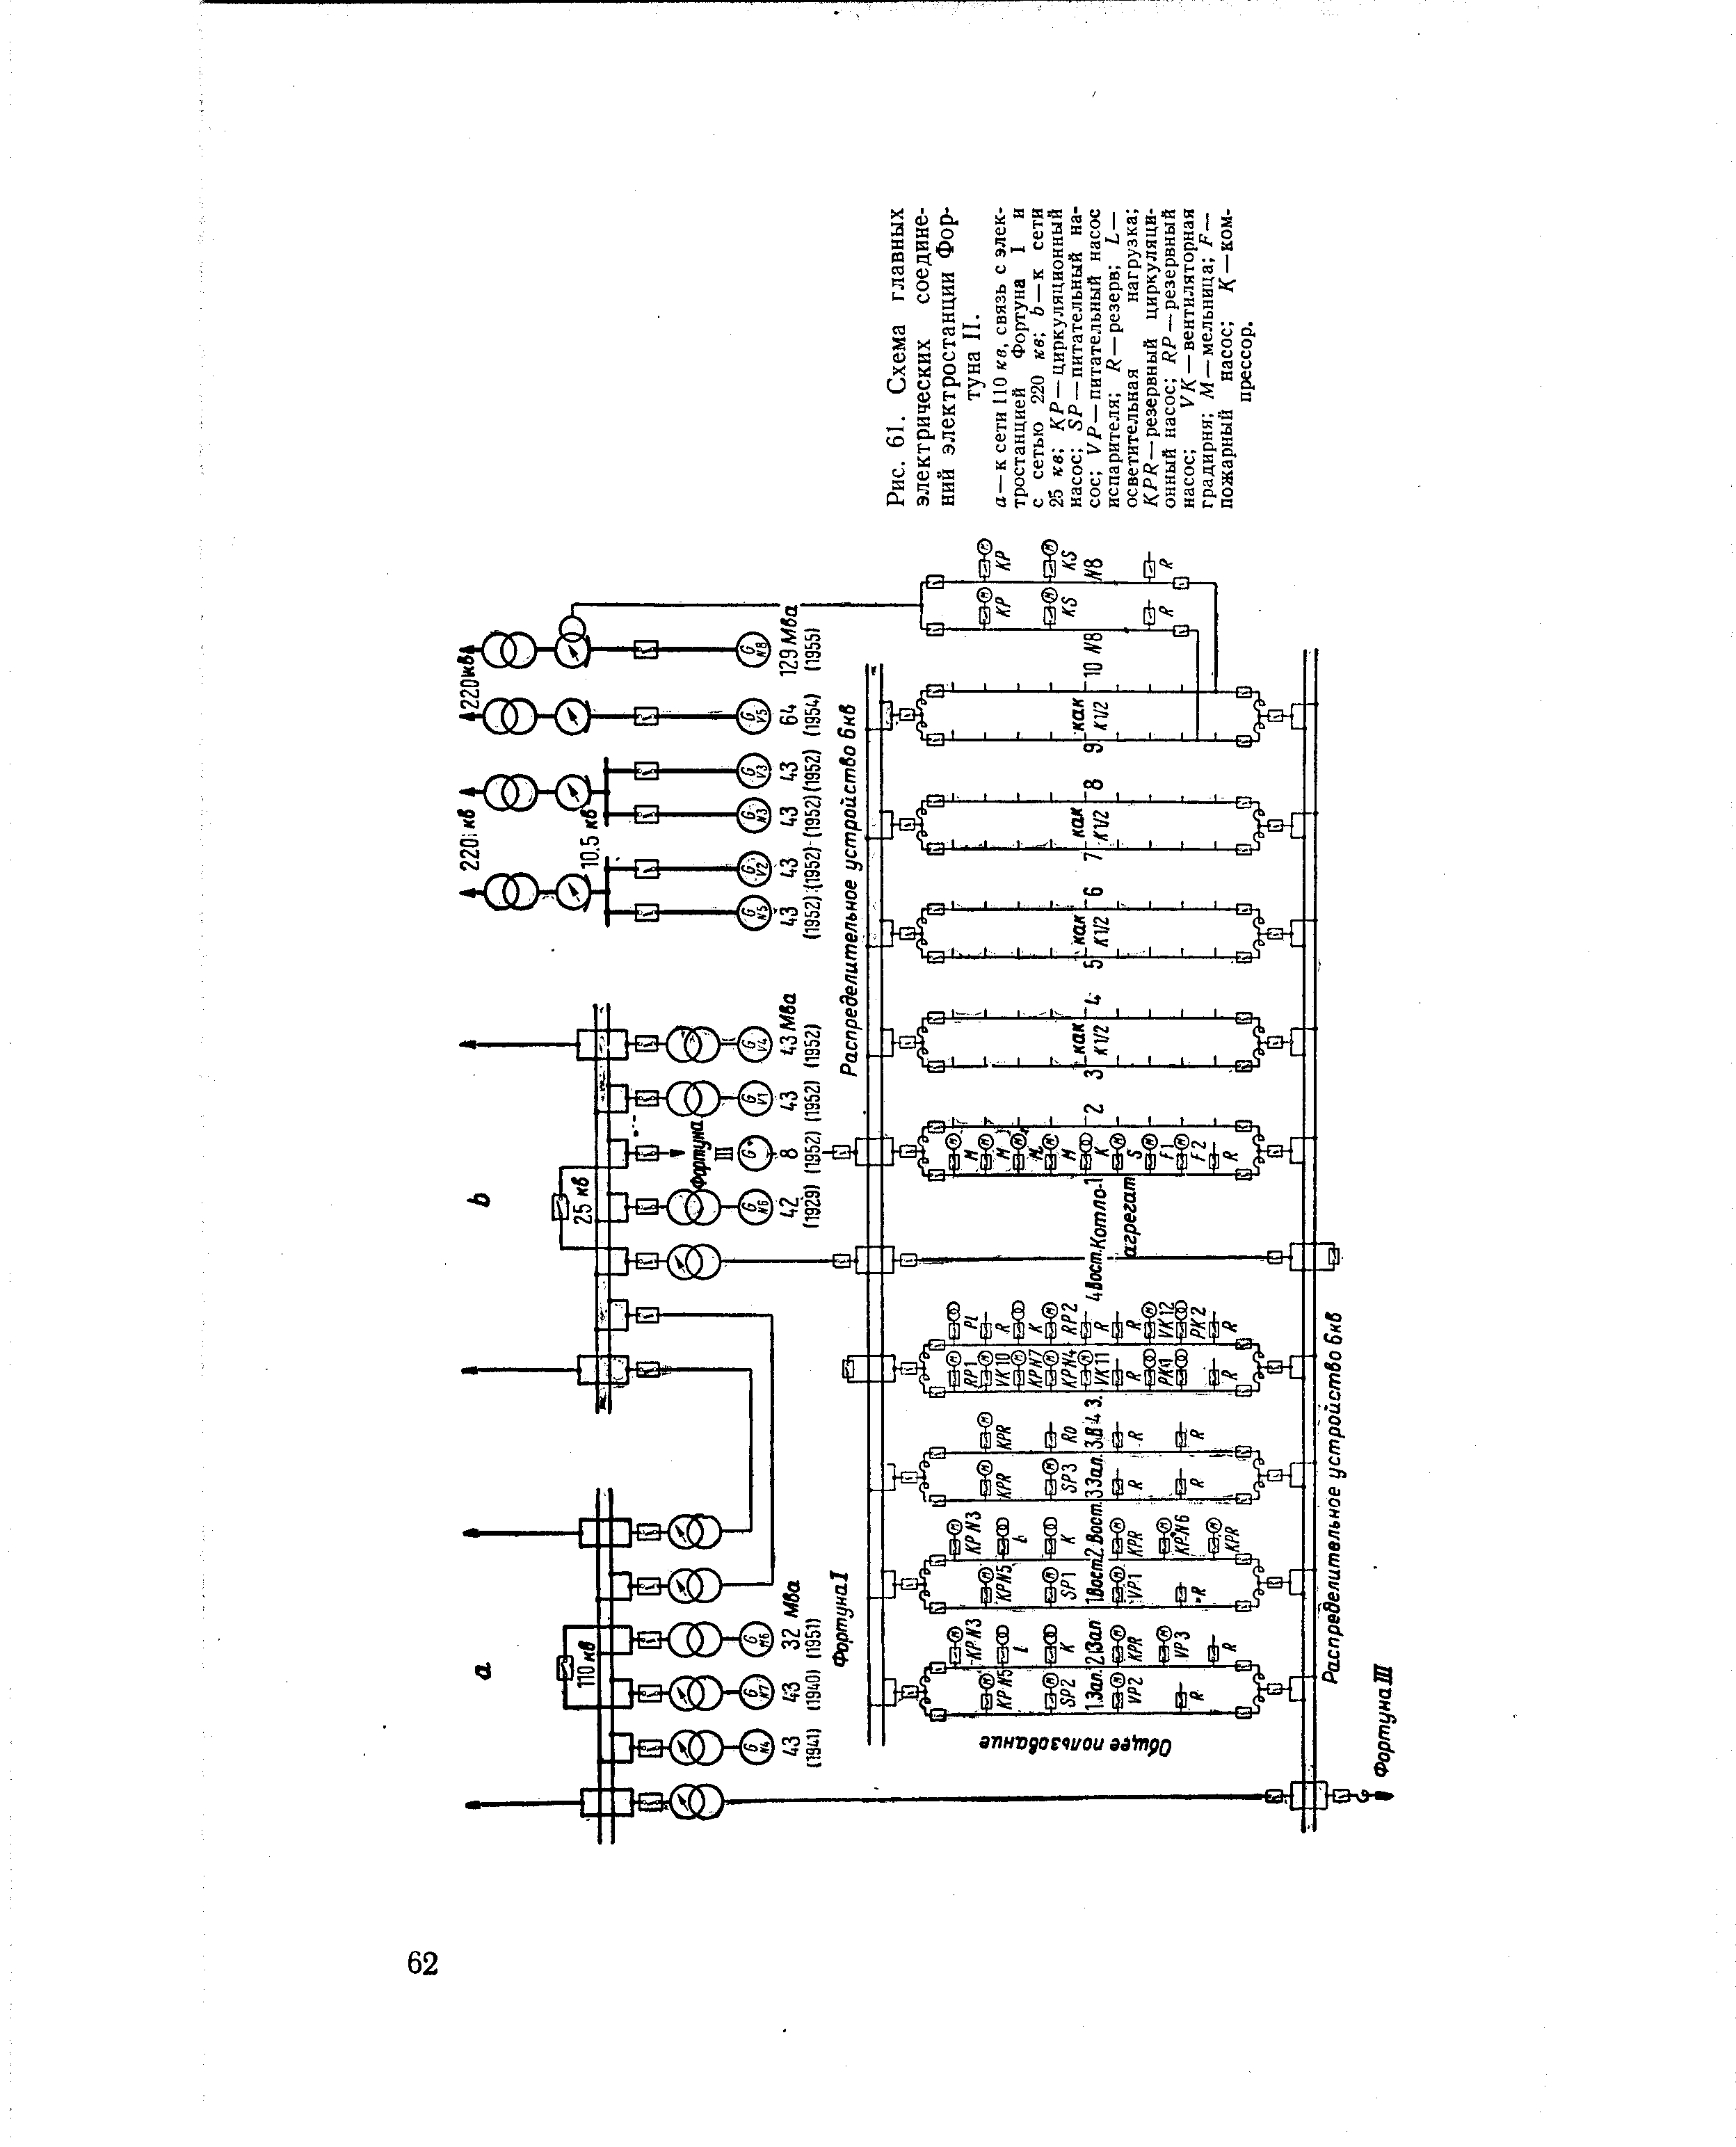 Рис. 61. Схема главных электрических соединений электростанции Фортуна II.
